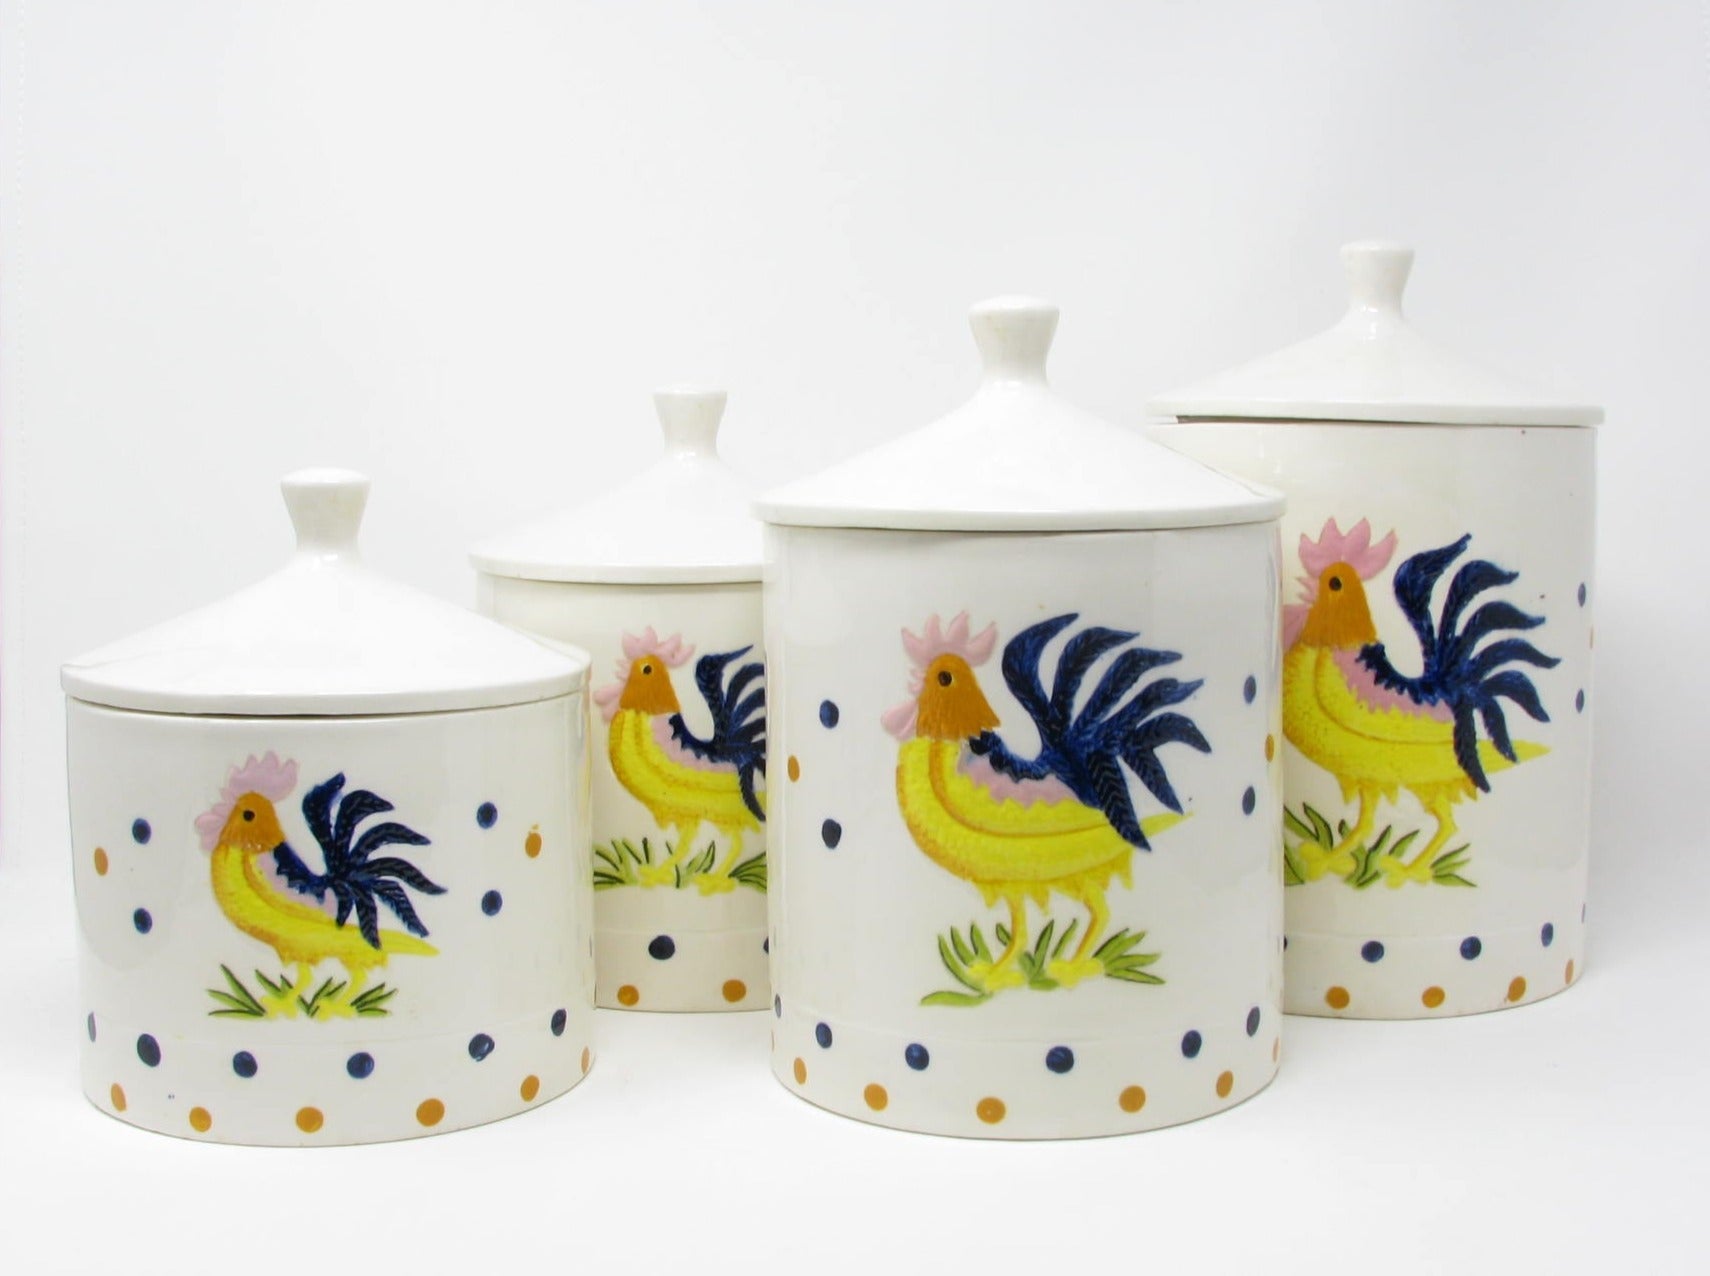 Hen & Rooster Ceramic 6-Piece Kitchen Set